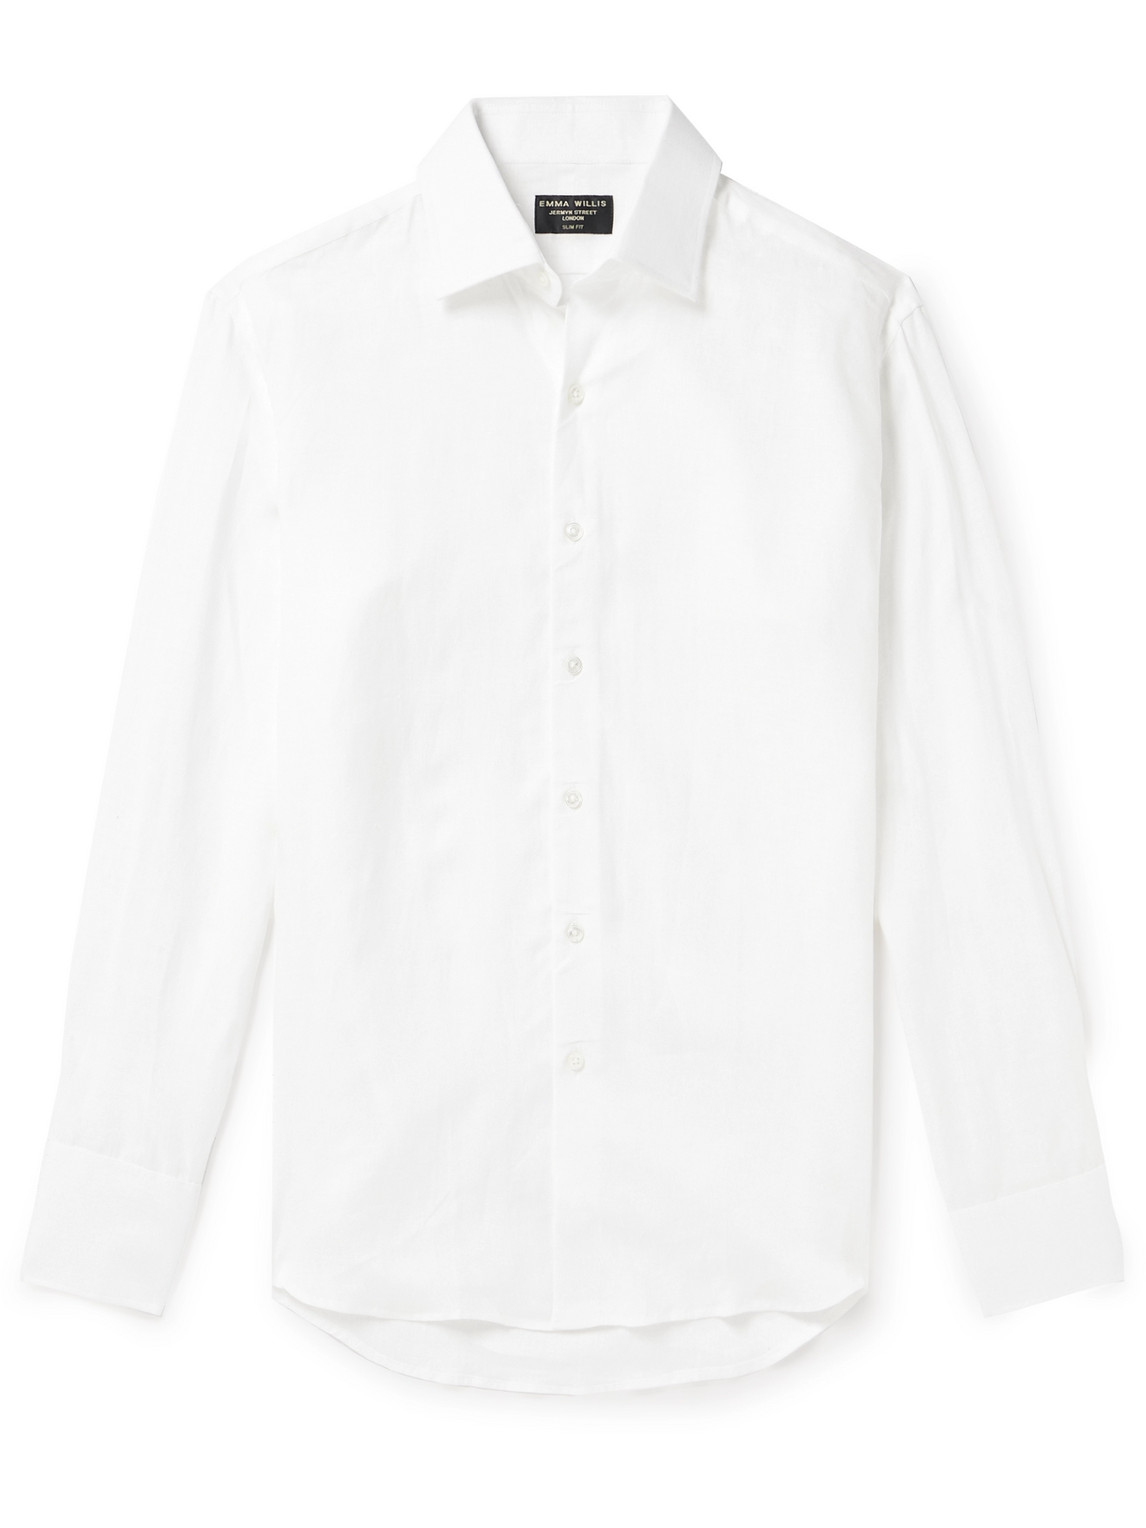 Emma Willis Linen Shirt In White